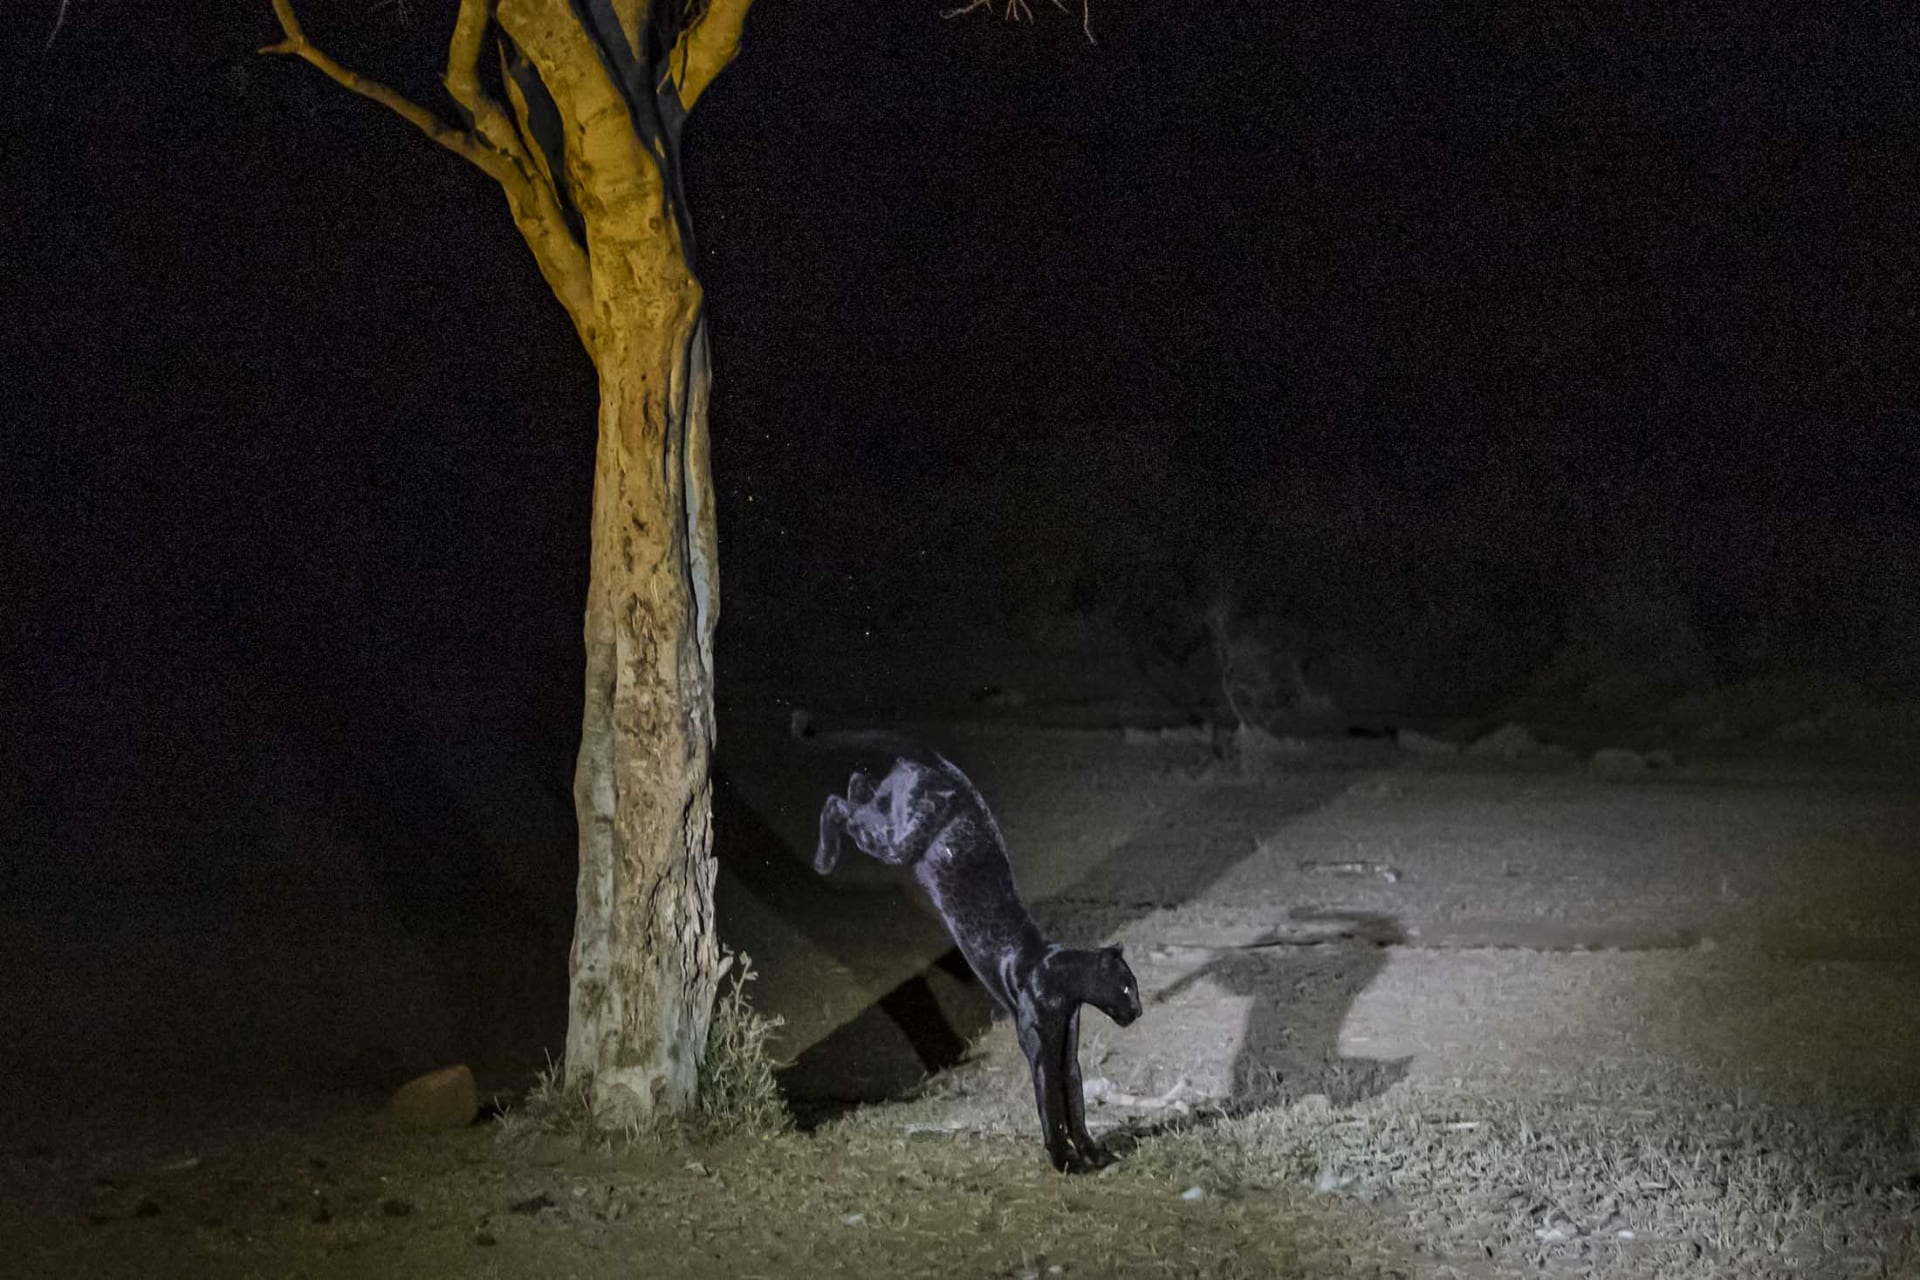 يعني اسمها "الظلام".. مصور يرتجف من الإثارة أثناء توثيق أنثى نمر نادرة في كينيا